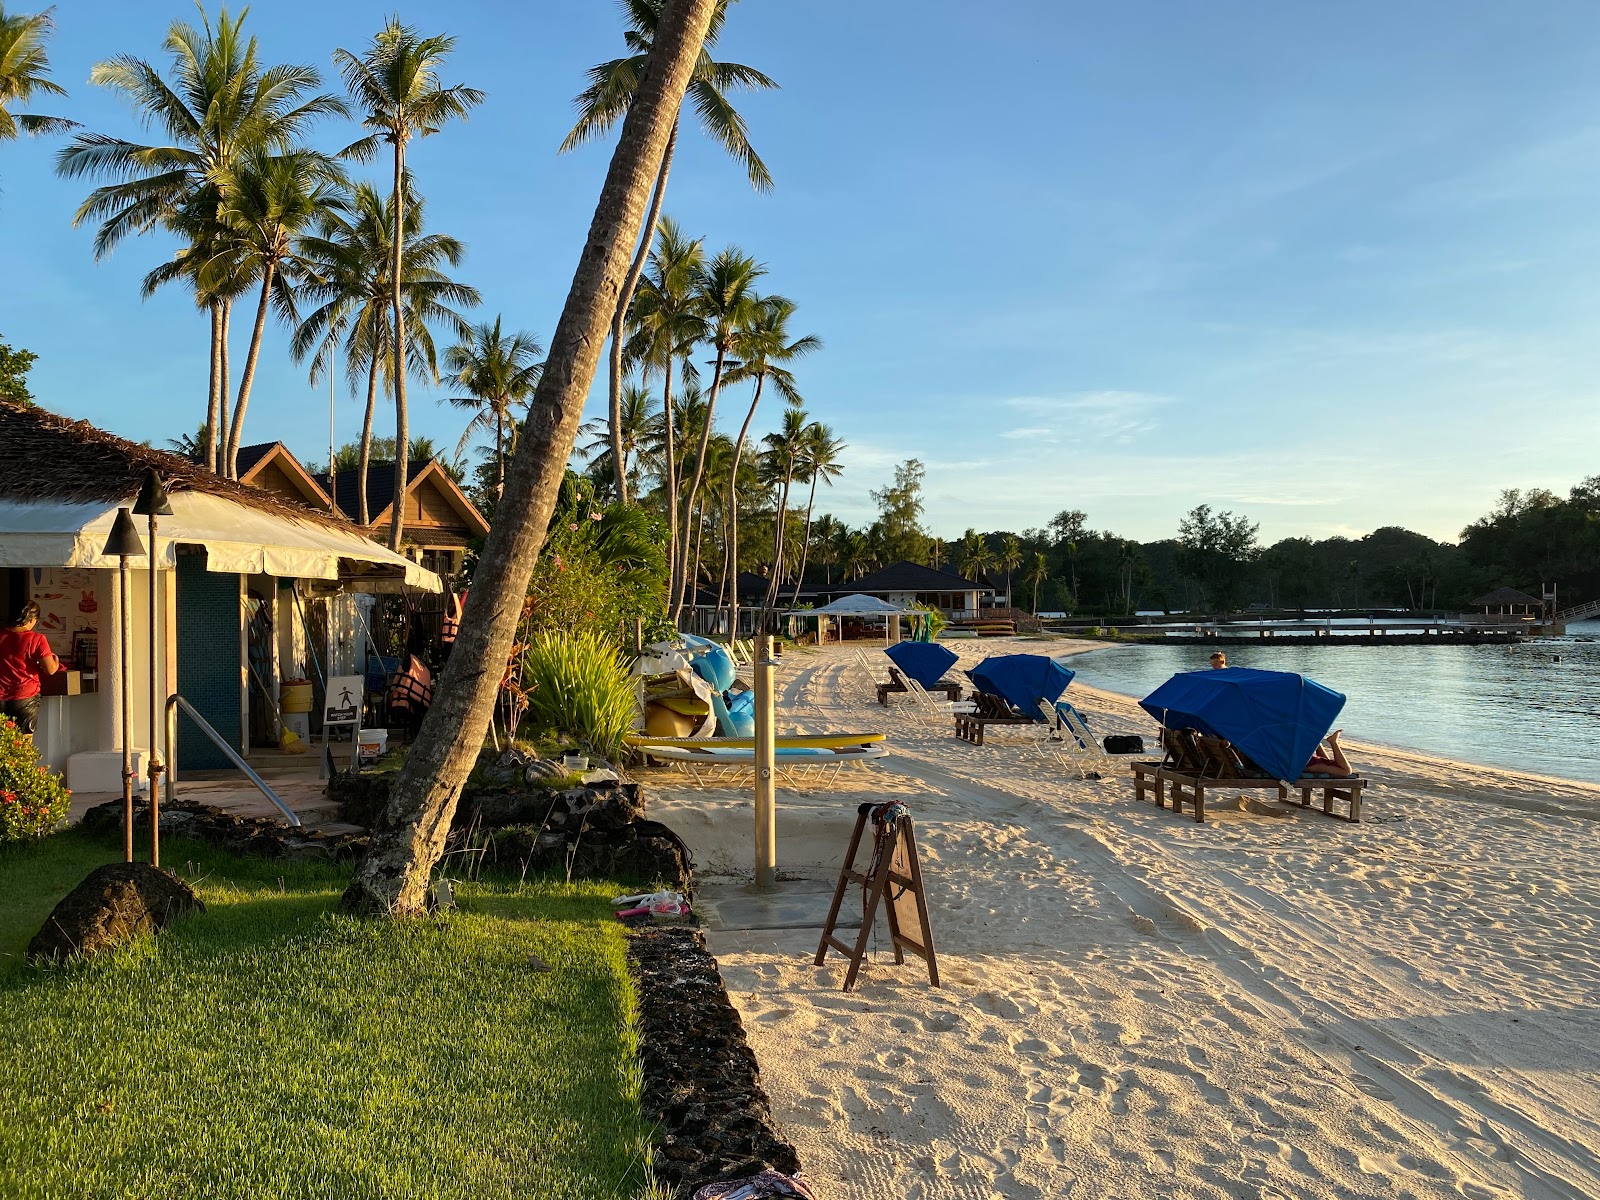 Foto af Palau Pacific Resort - populært sted blandt afslapningskendere